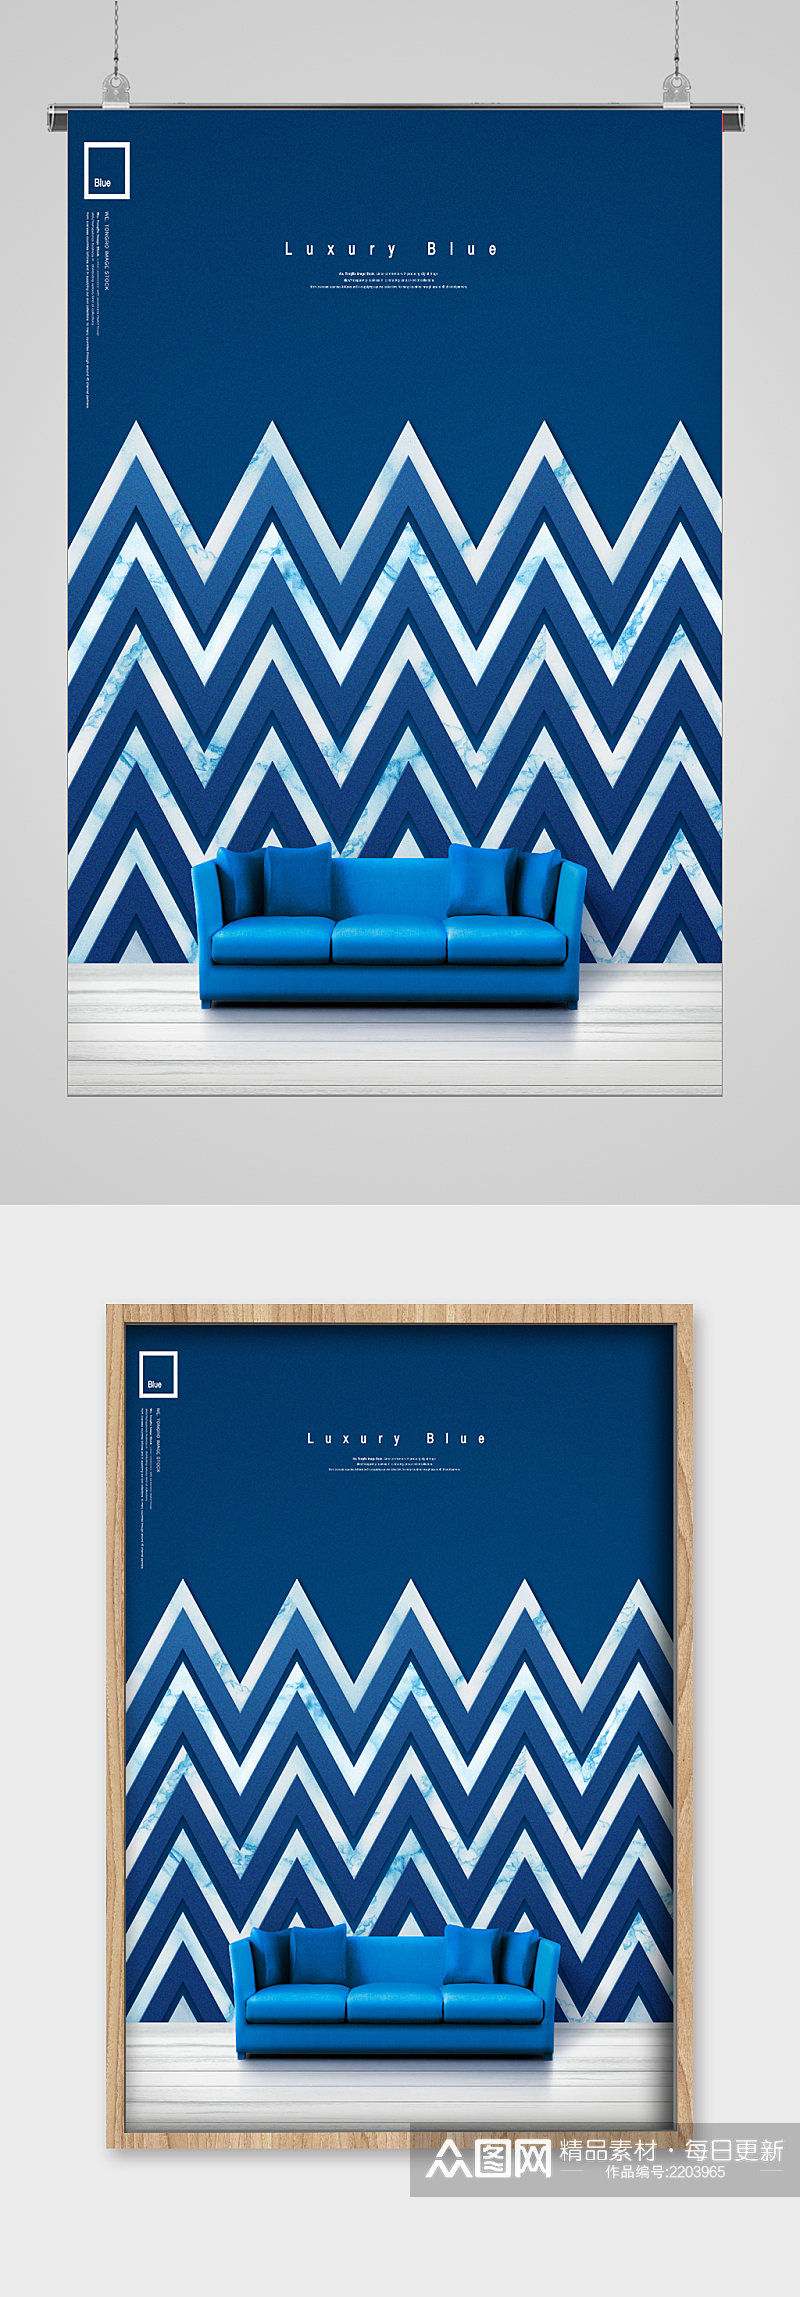 蓝色沙发装饰宣传海报素材